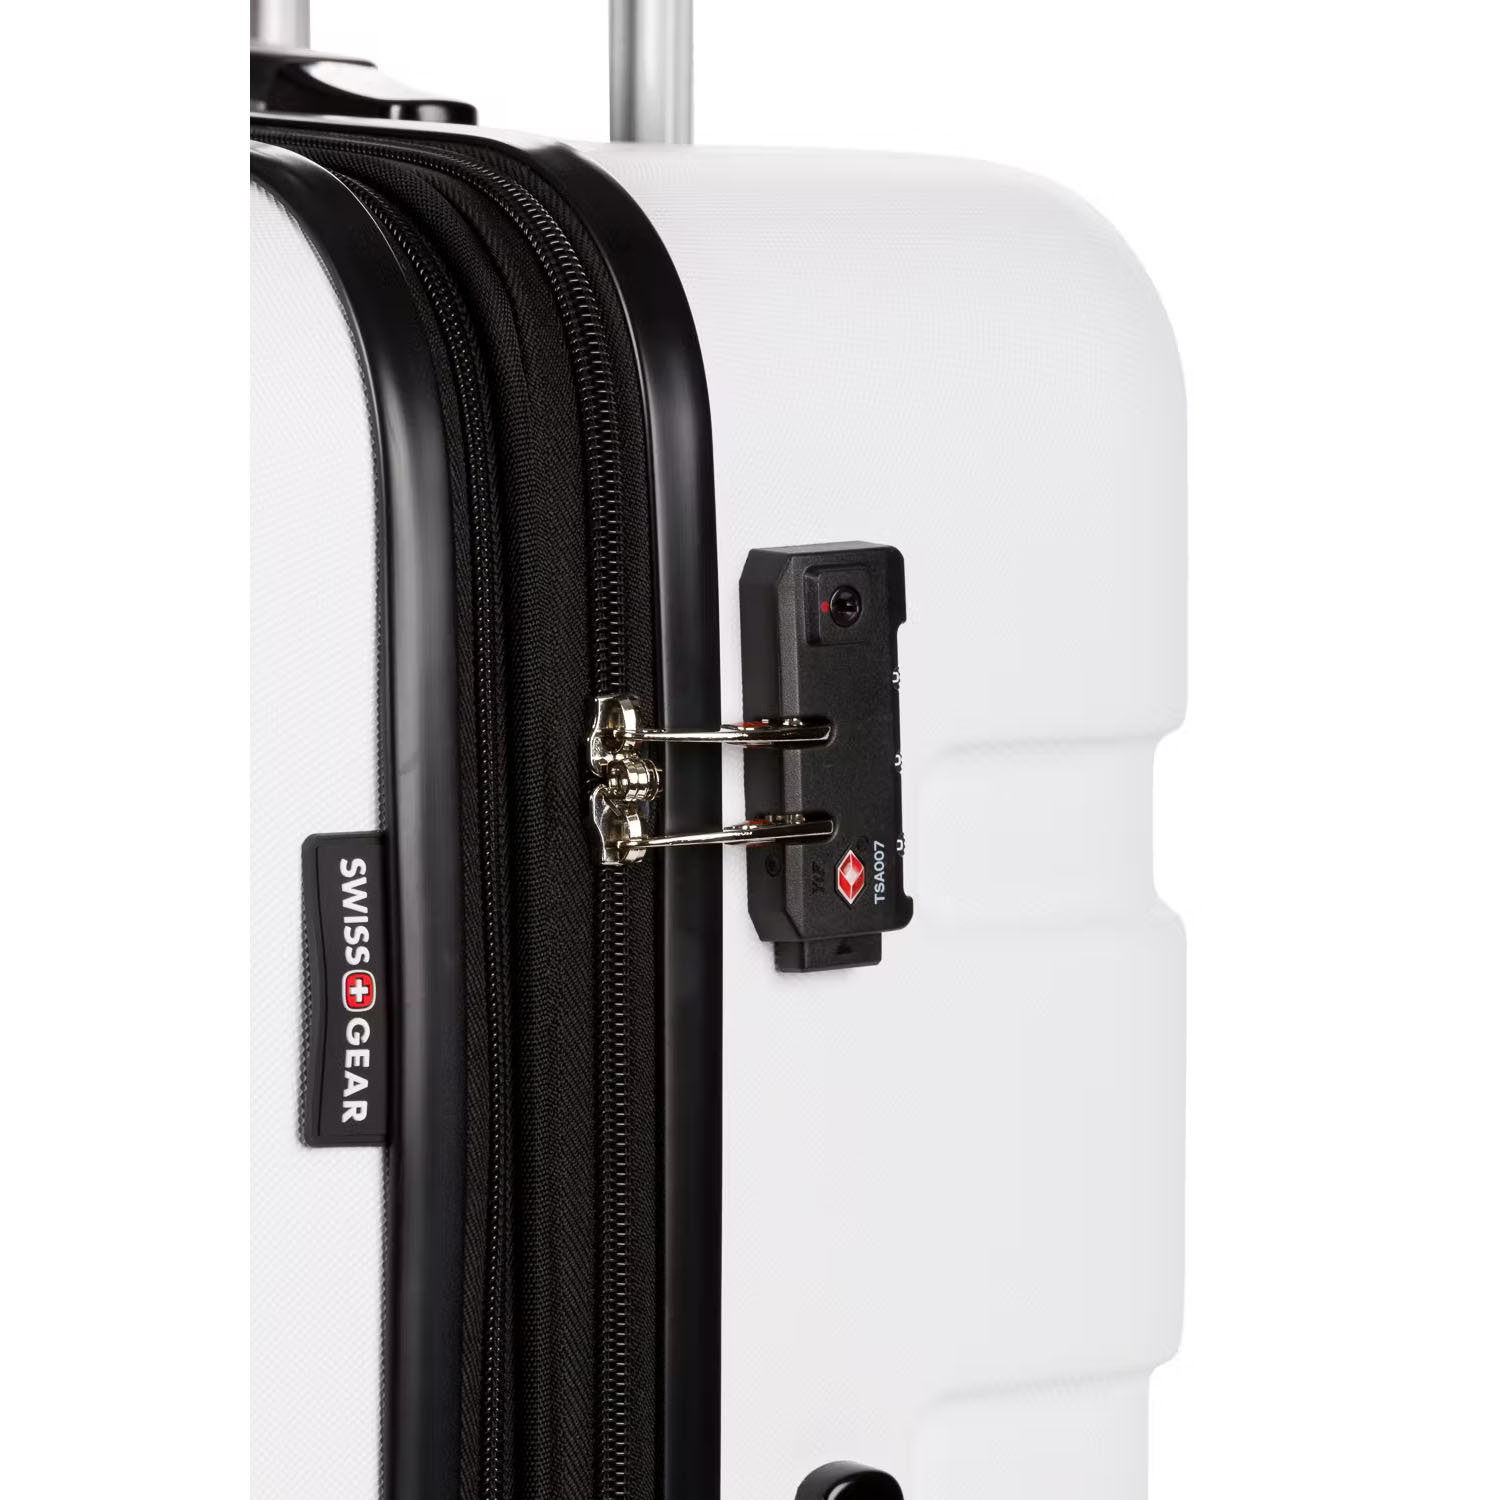 Swissgear 7366 Expandable 3PC Hardside Luggage Set - Lime